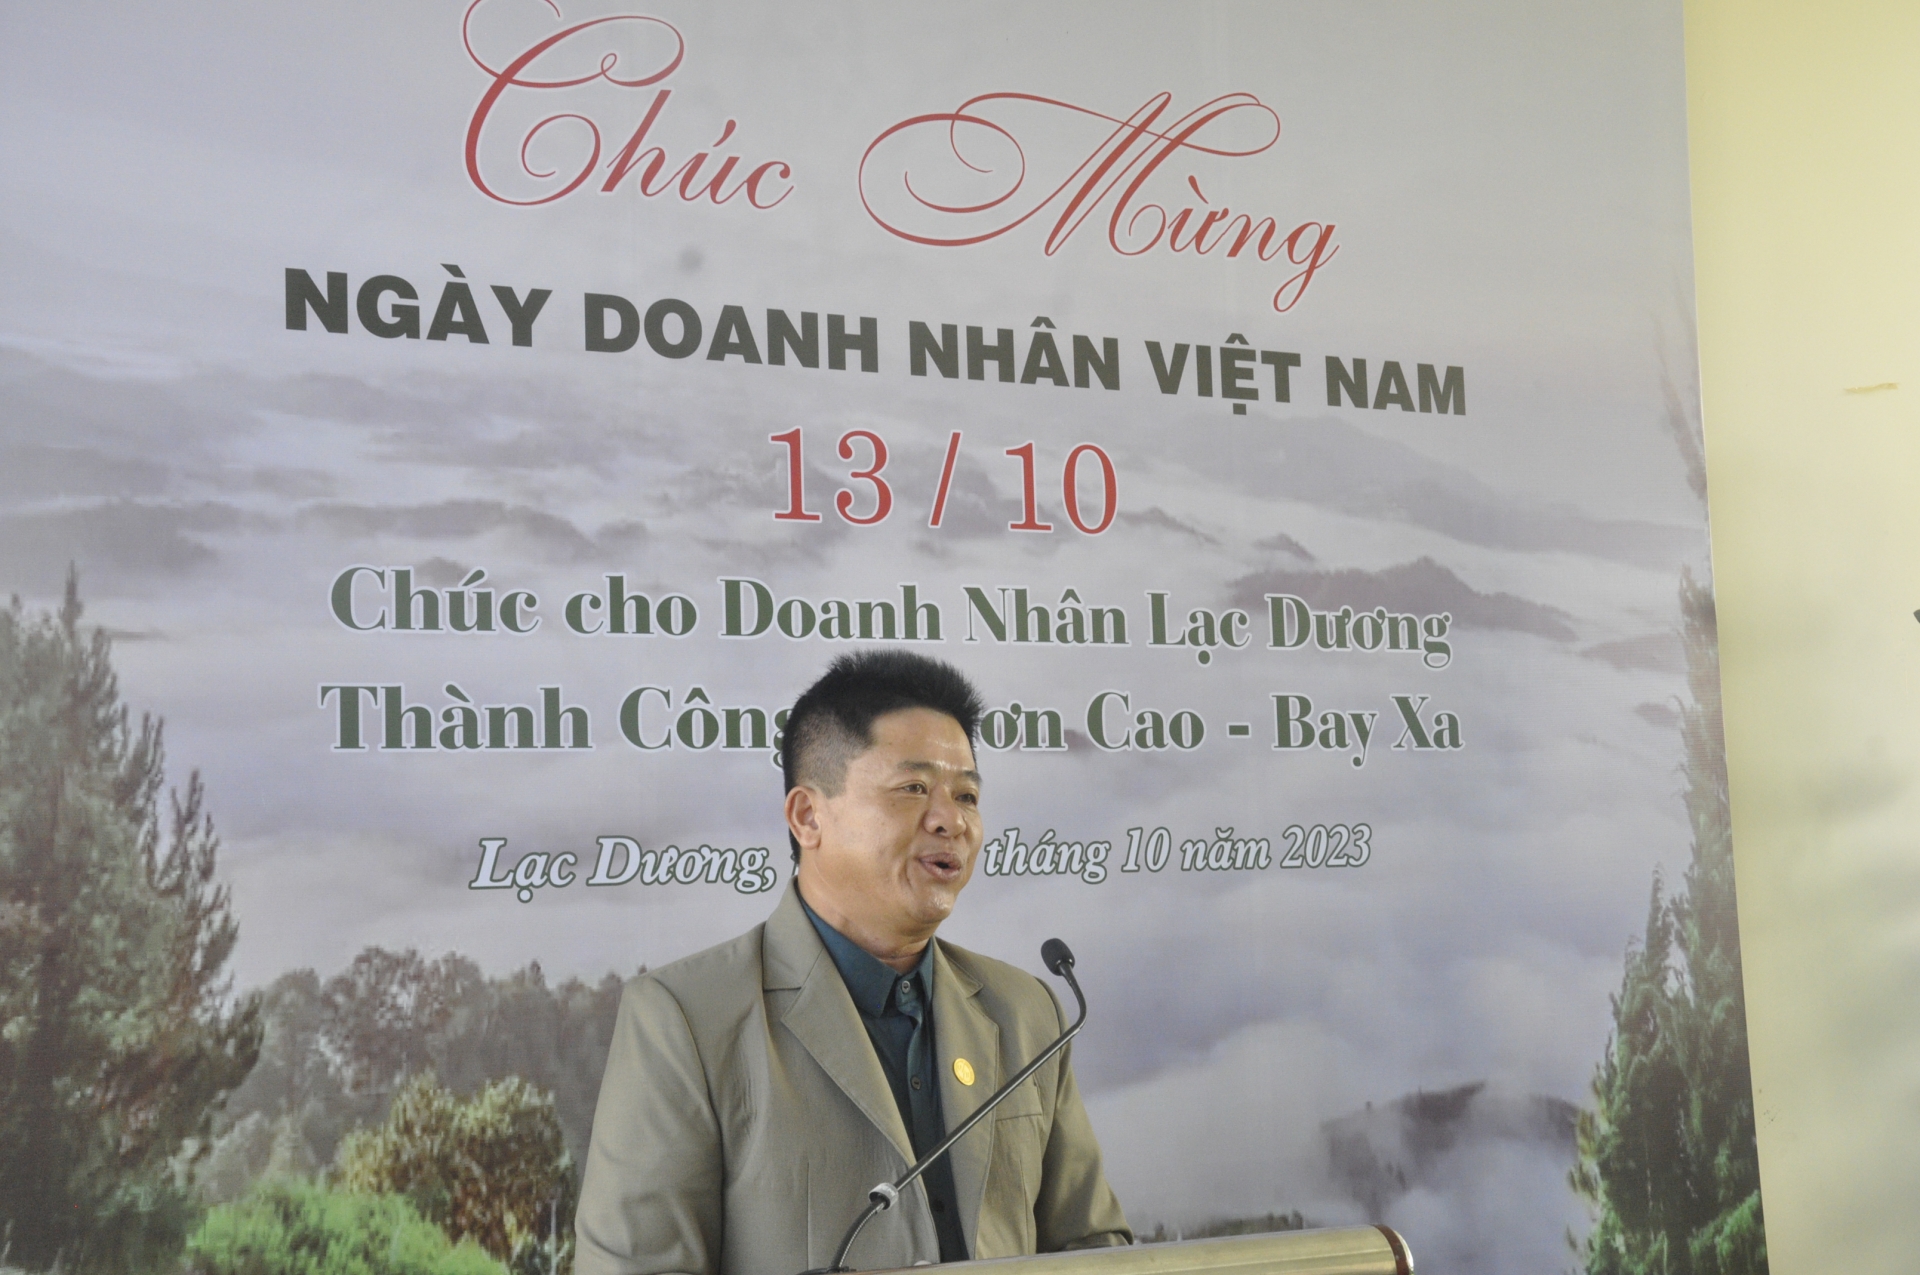 Chủ tịch Chi hội Doanh nghiệp Lạc Dương chia sẻ về hoạt động của hội với các hội viên trong ngay Doanh nhân Việt Nam (13/10) vừa qua.